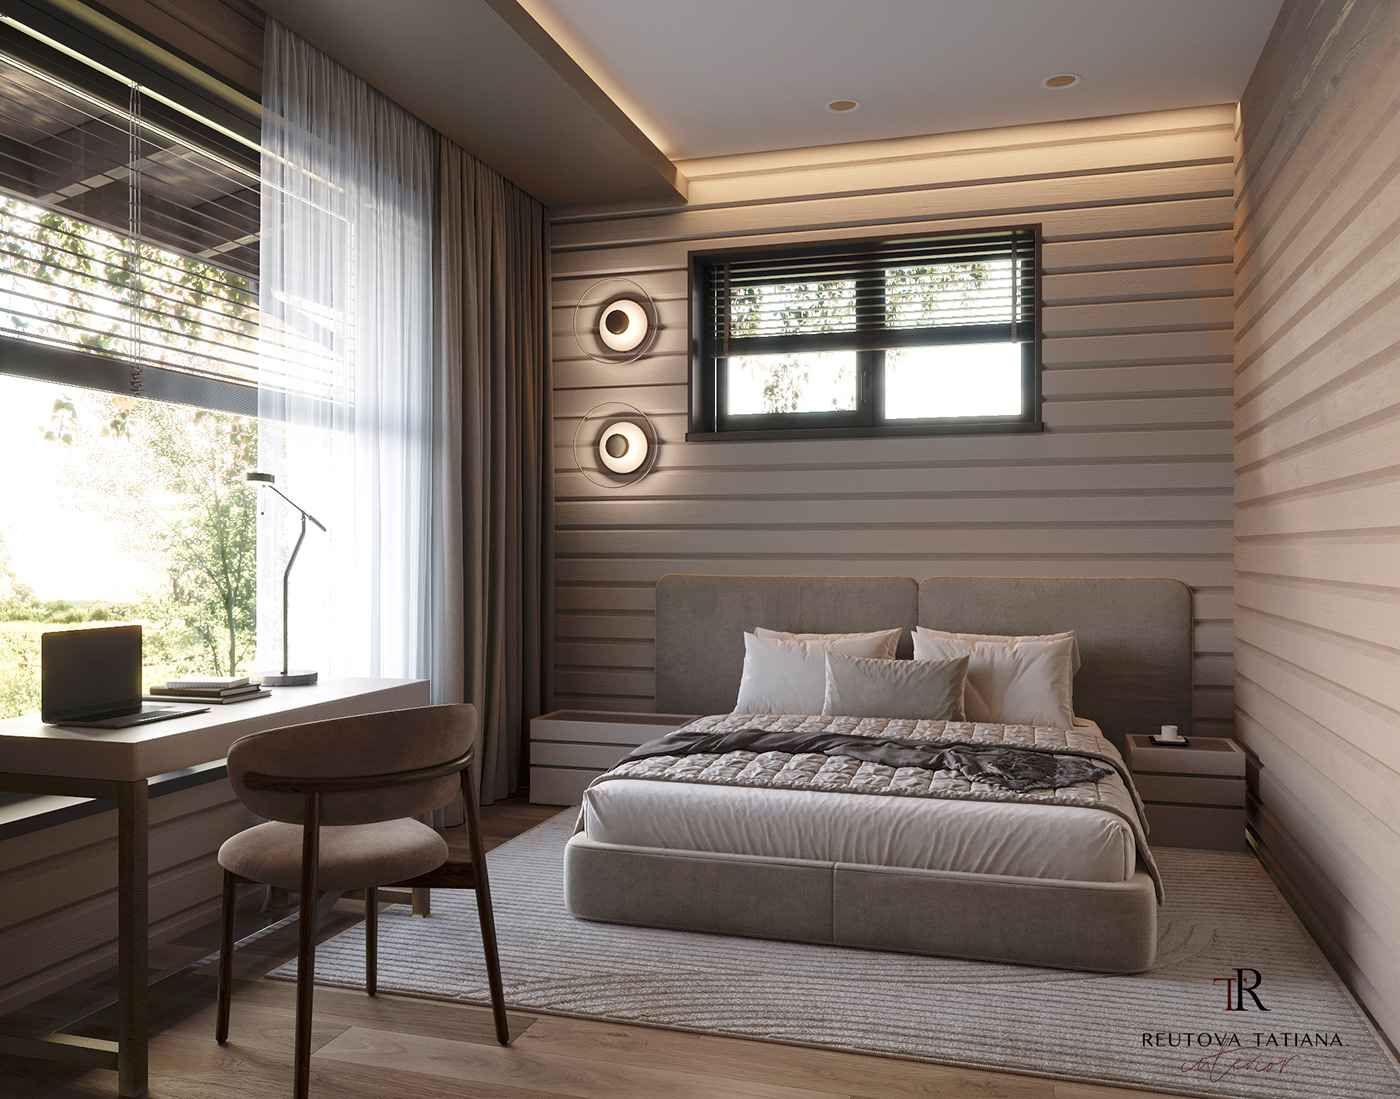 cozy bedroom visualization 3D interior design  archviz cozy home cozy interior